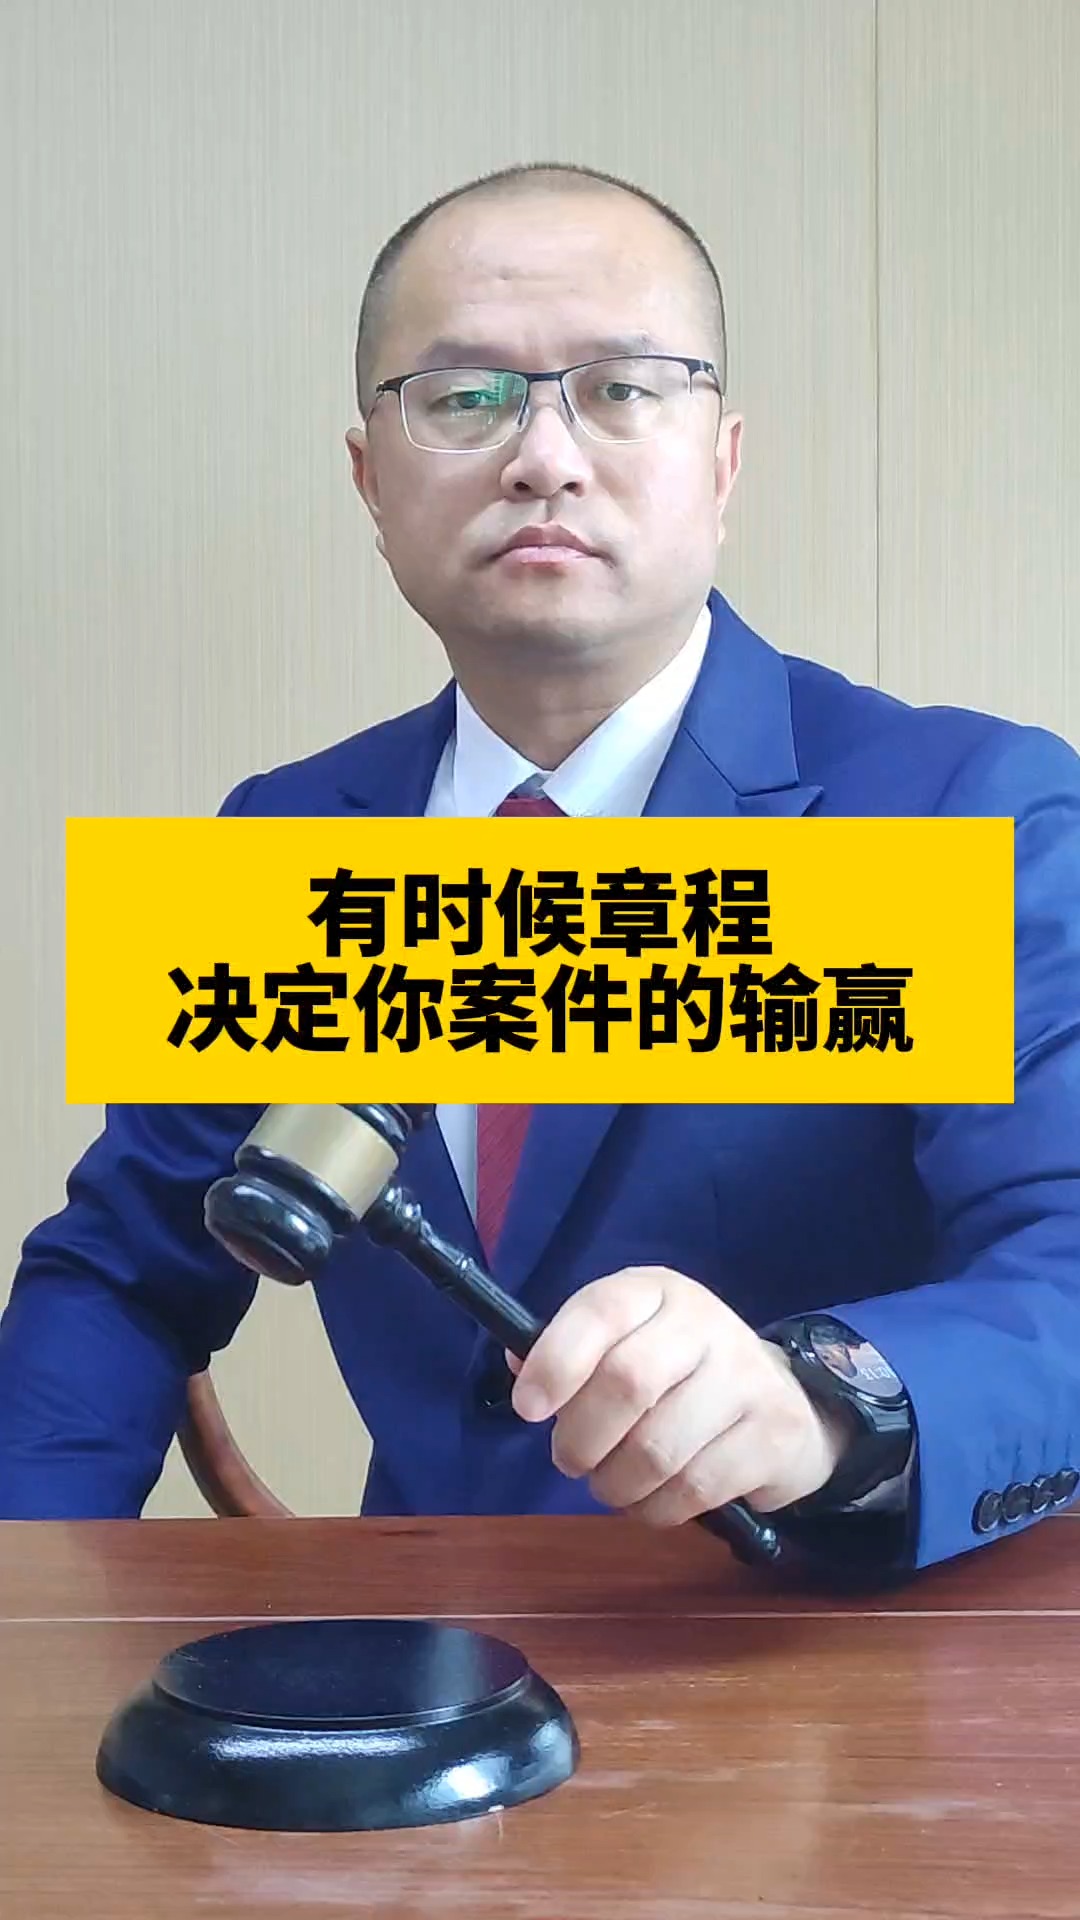 有时候章程决定你案件的输赢#东莞劳动律师   #东莞律师事务所  #劳动法 